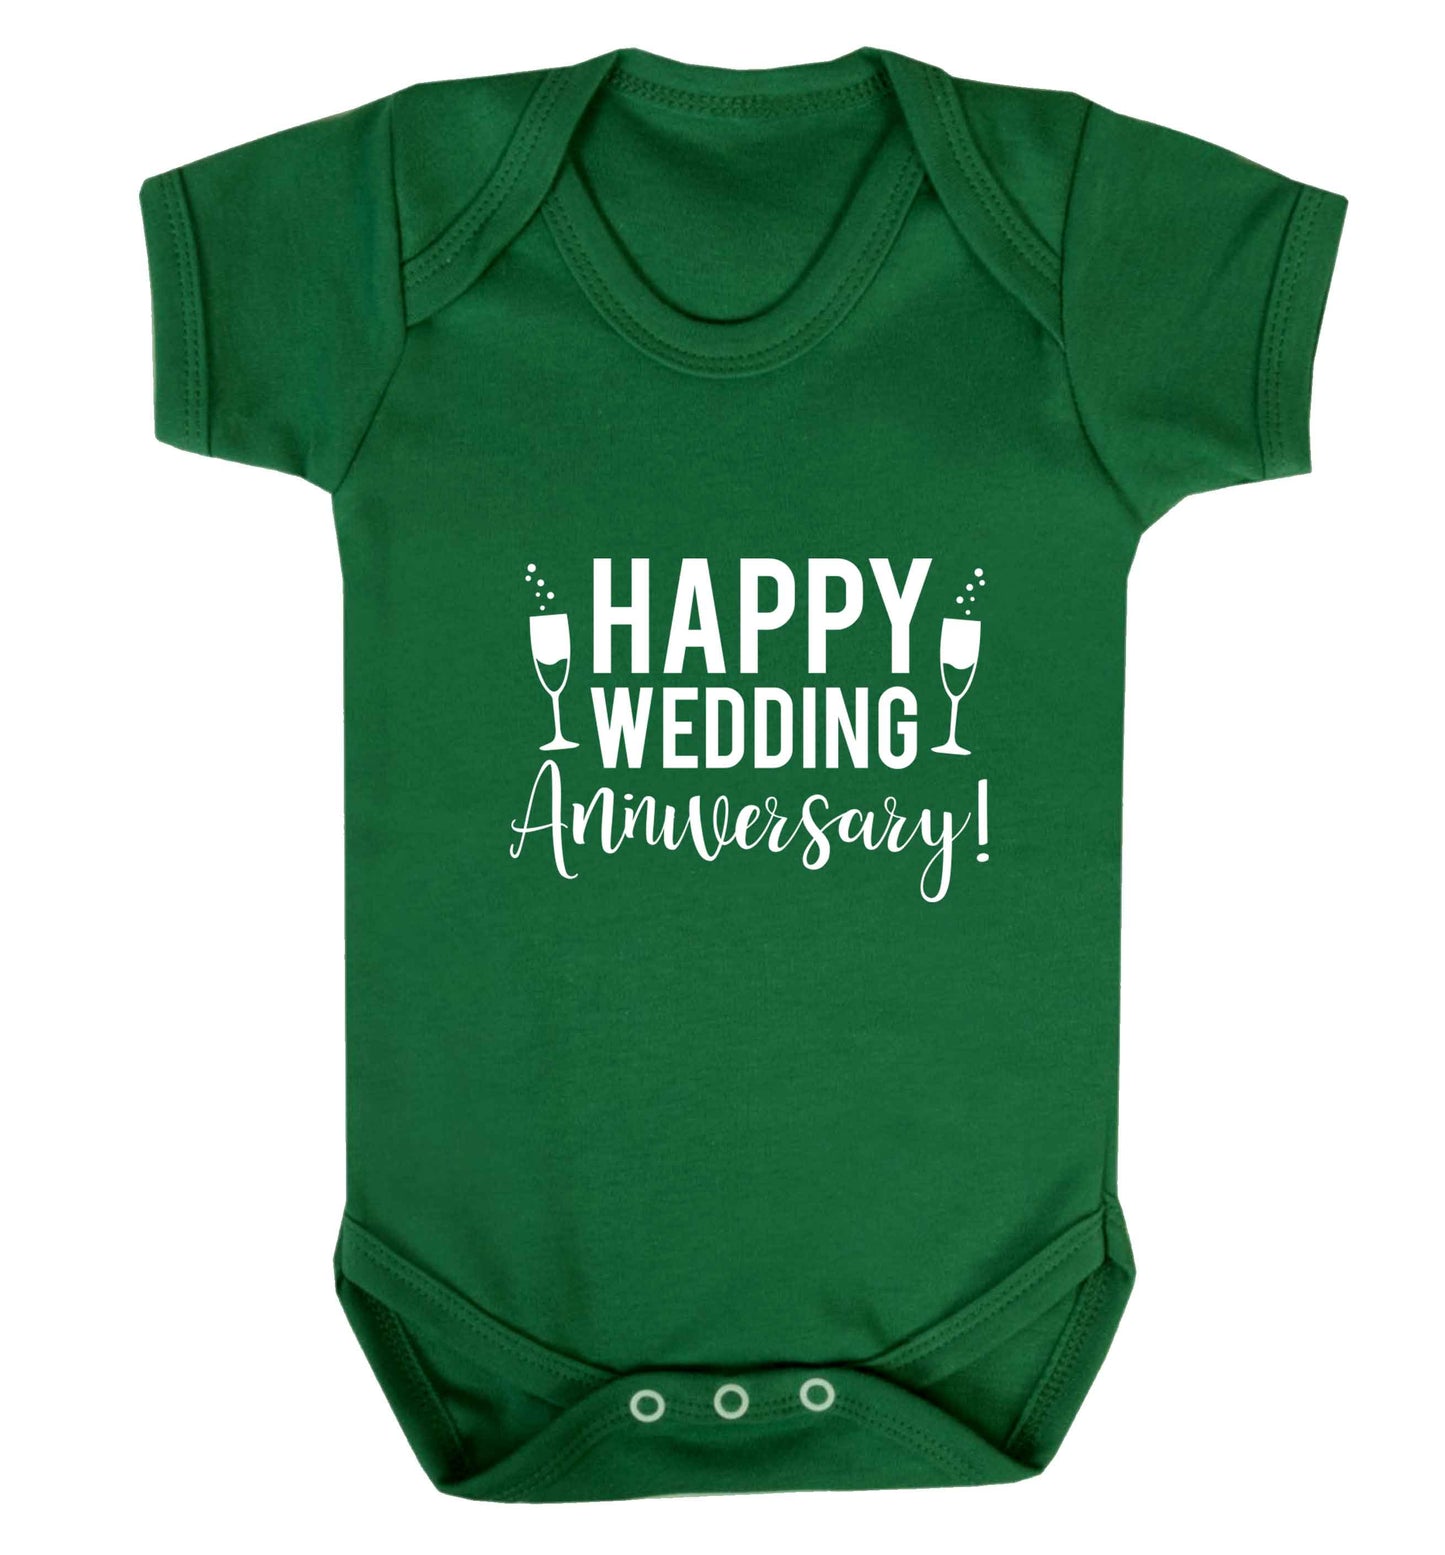 Happy wedding anniversary! baby vest green 18-24 months